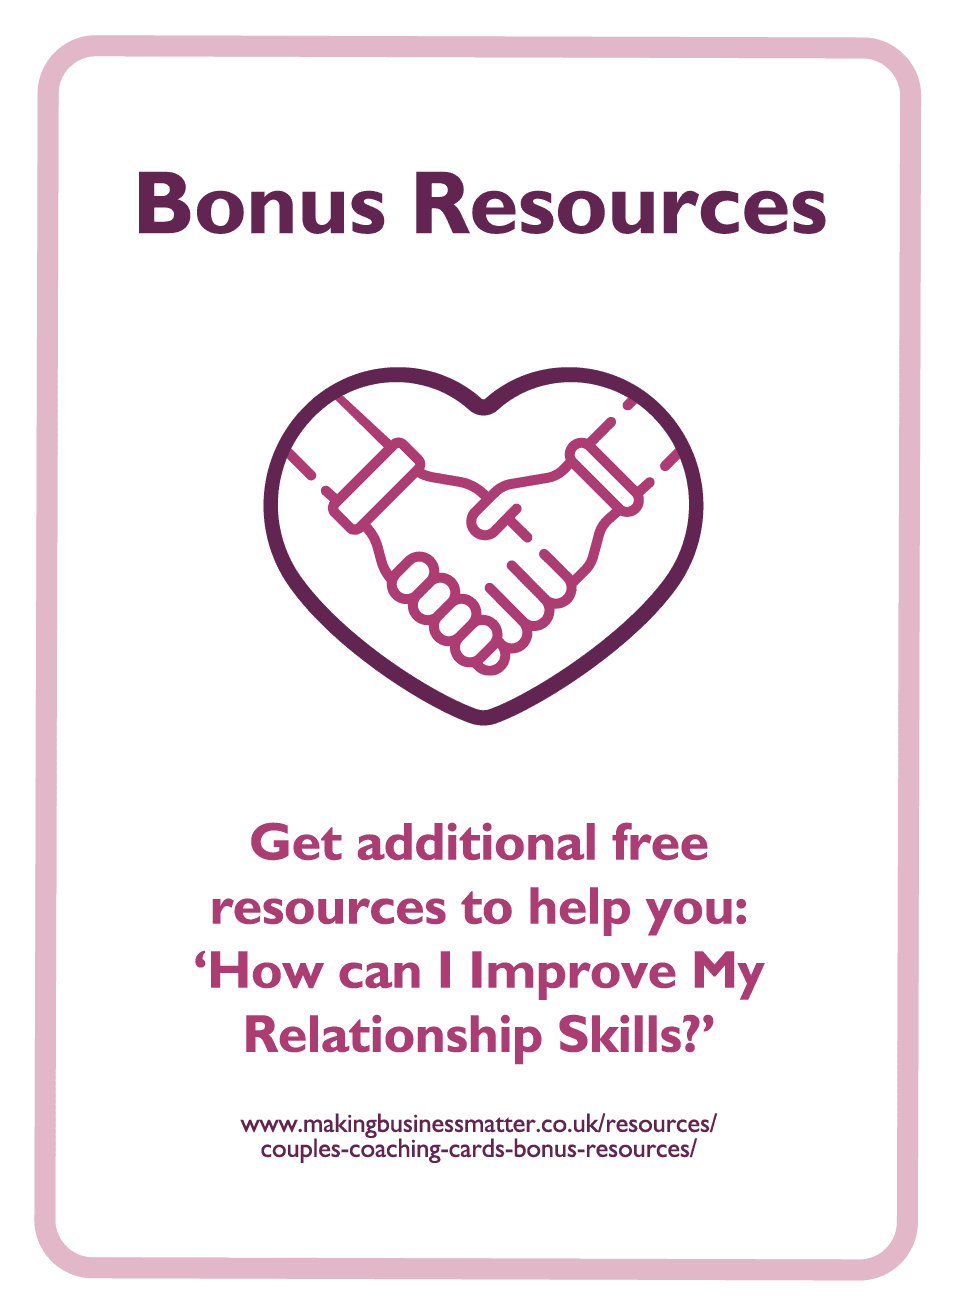 Bonus Resources Card